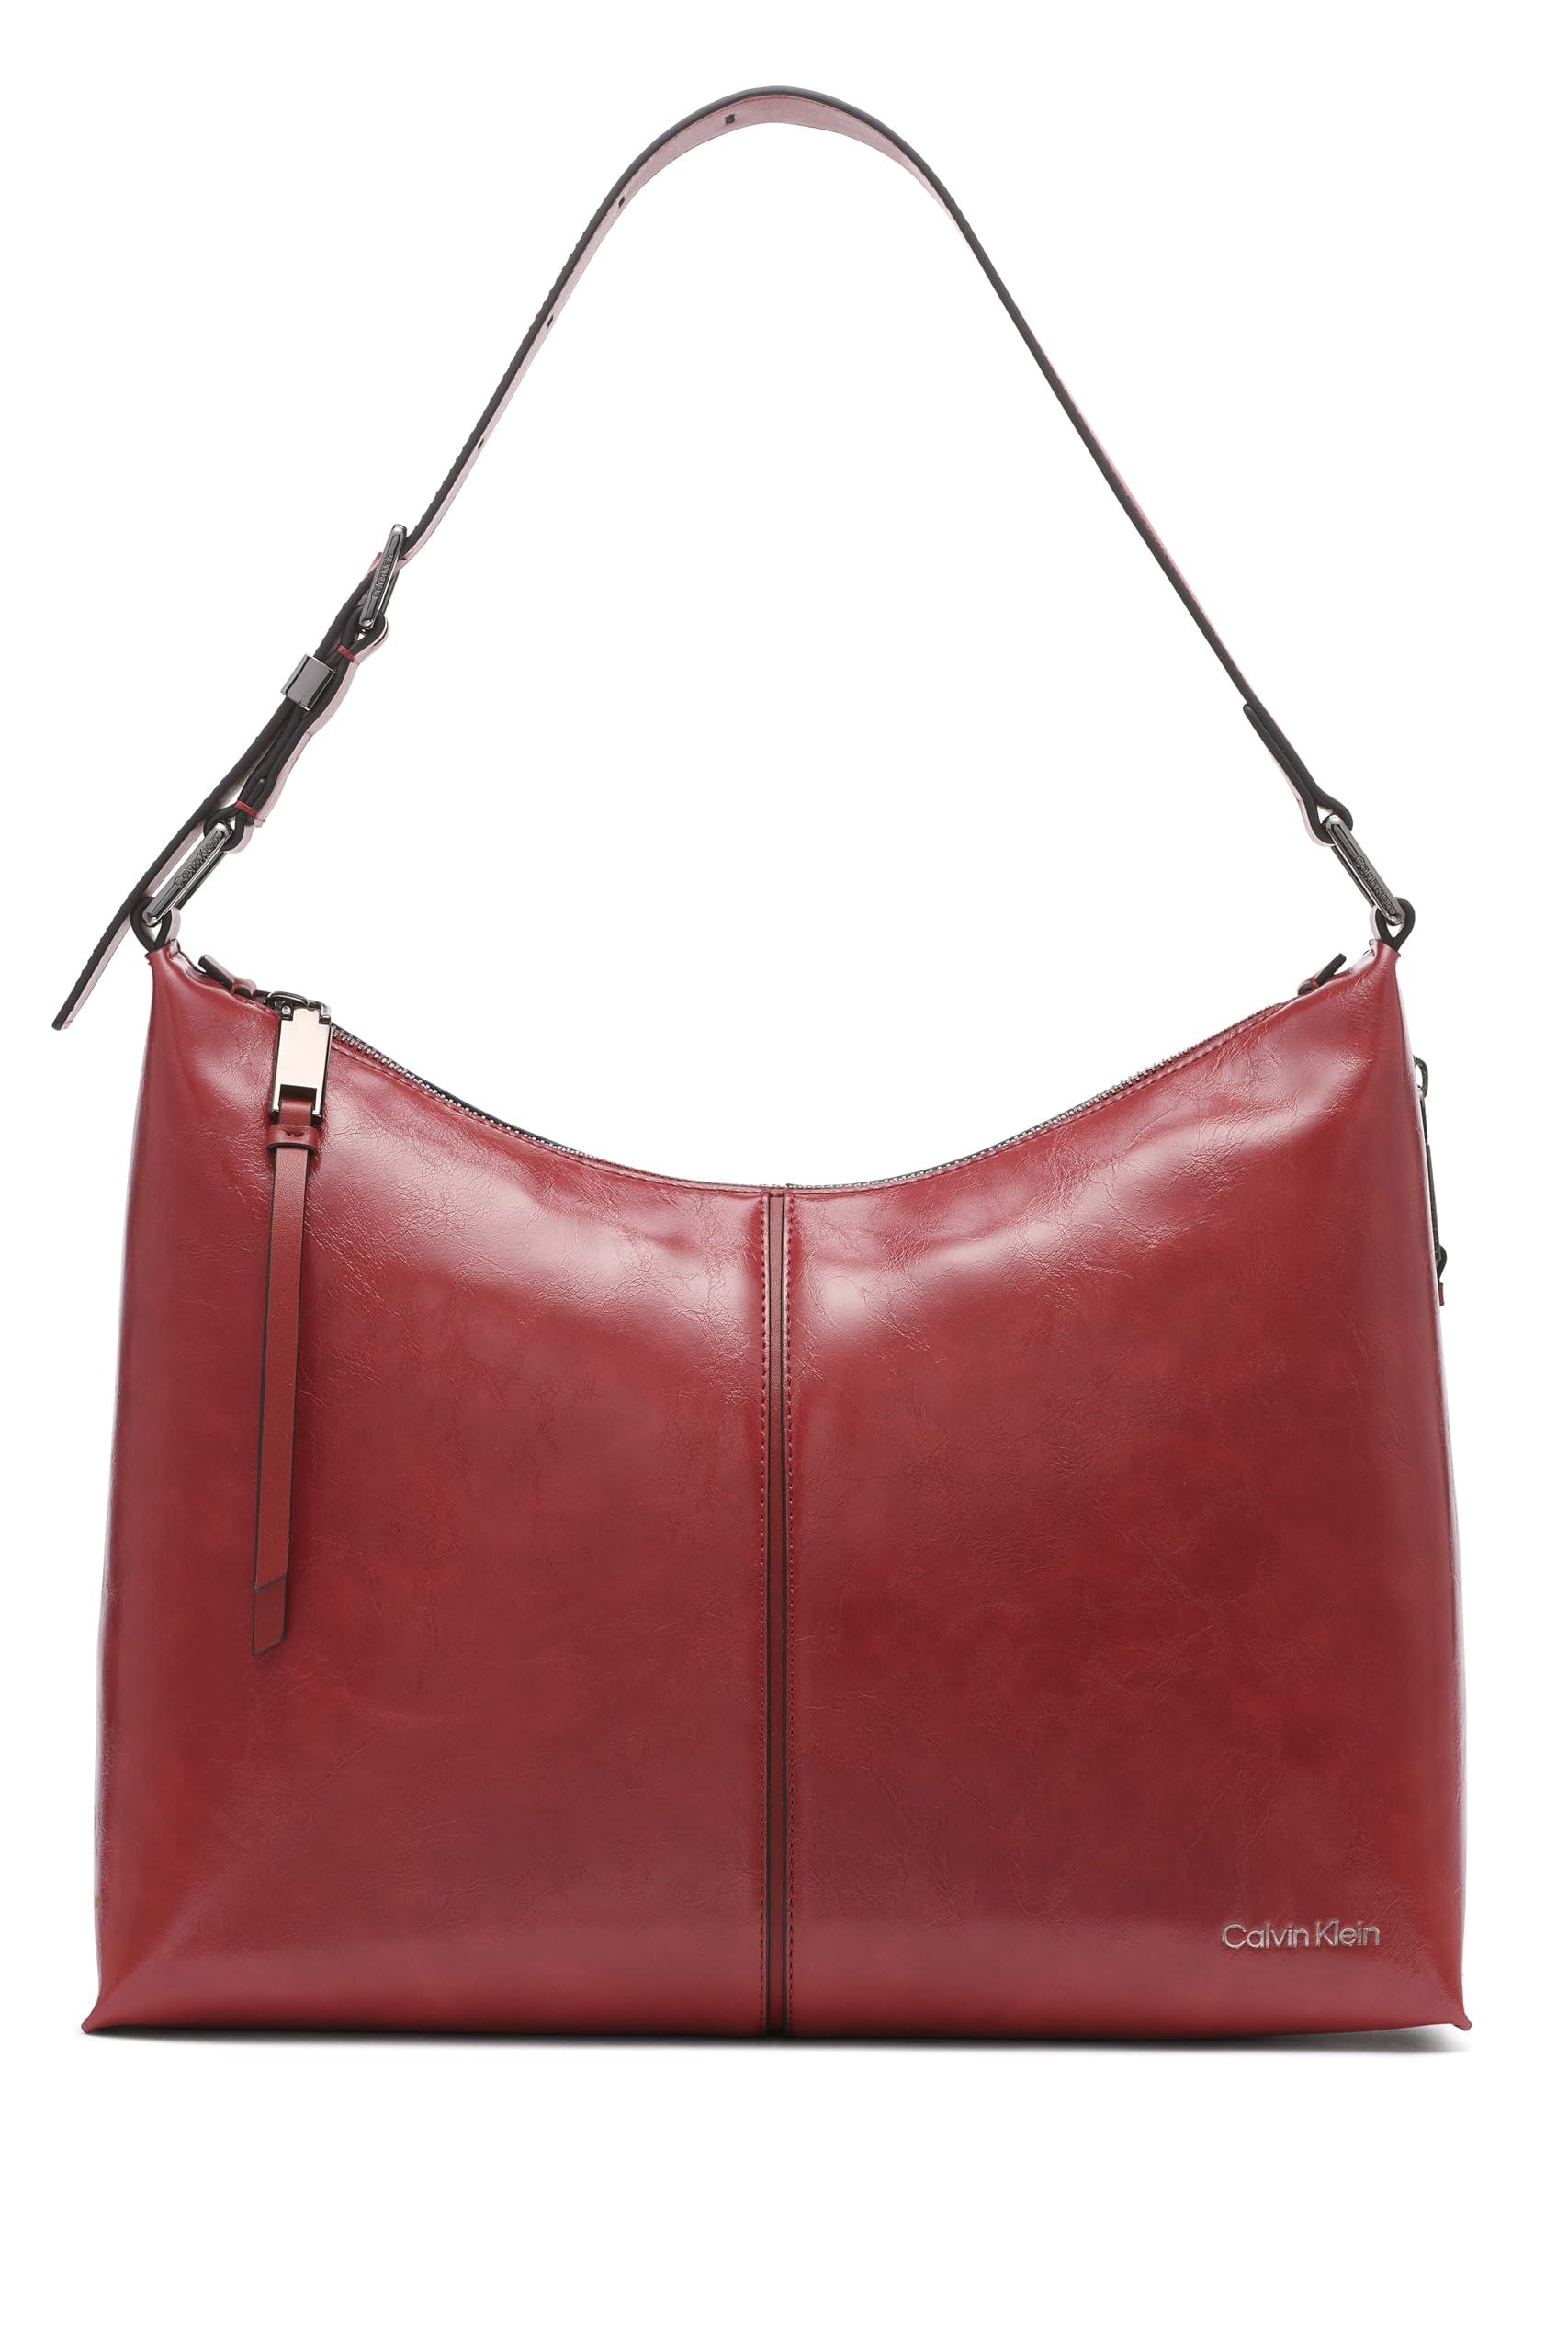 Calvin Klein Max Top Zip Hobo Shoulder Bag in Red